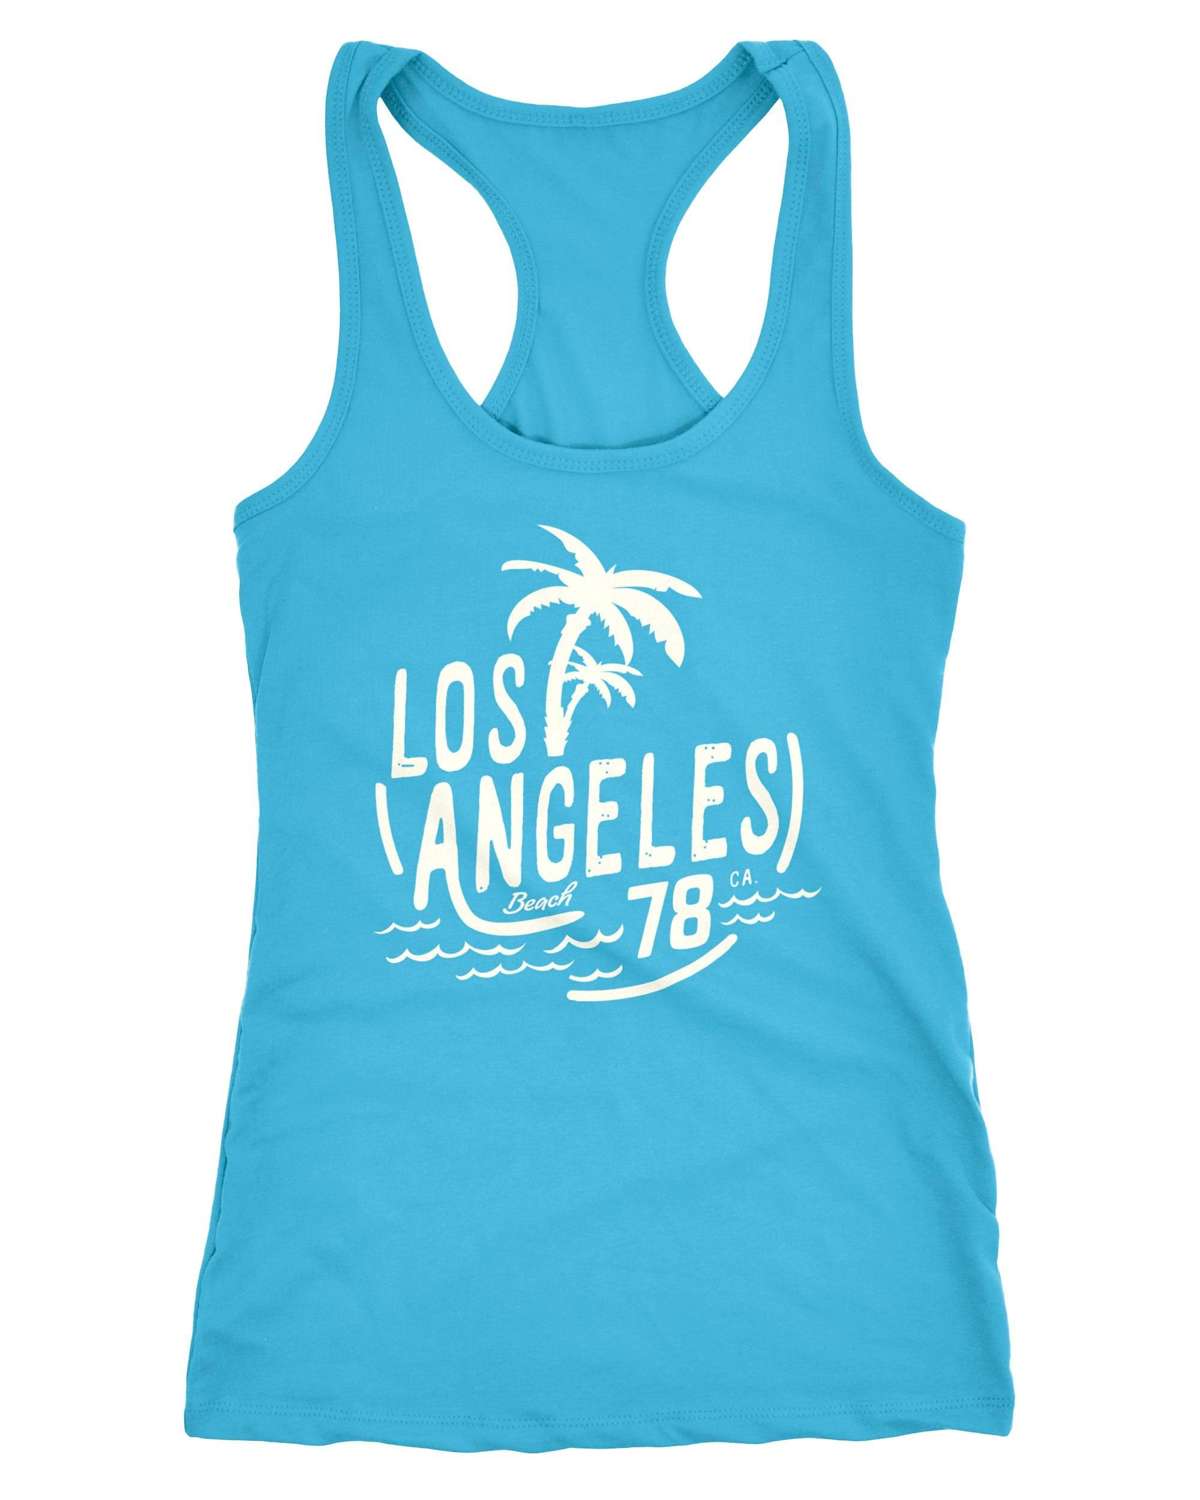 Майка женская майка-рубашка Los Angeles Beach Surf с принтом Racerback ®